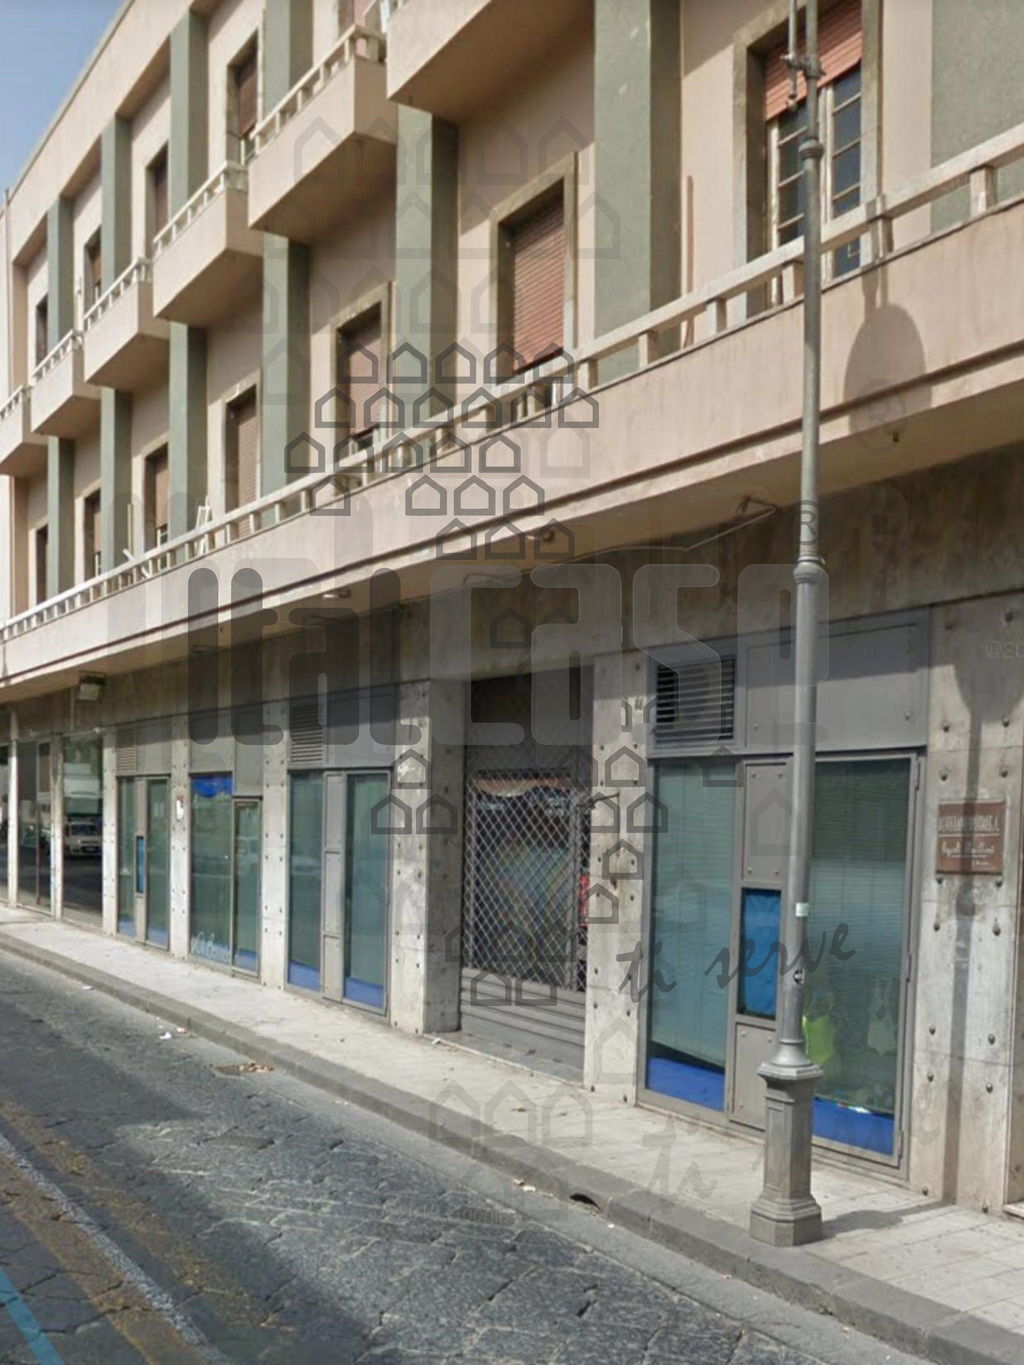 Attivit commerciale in affitto/gestione in via primo settembre, Messina